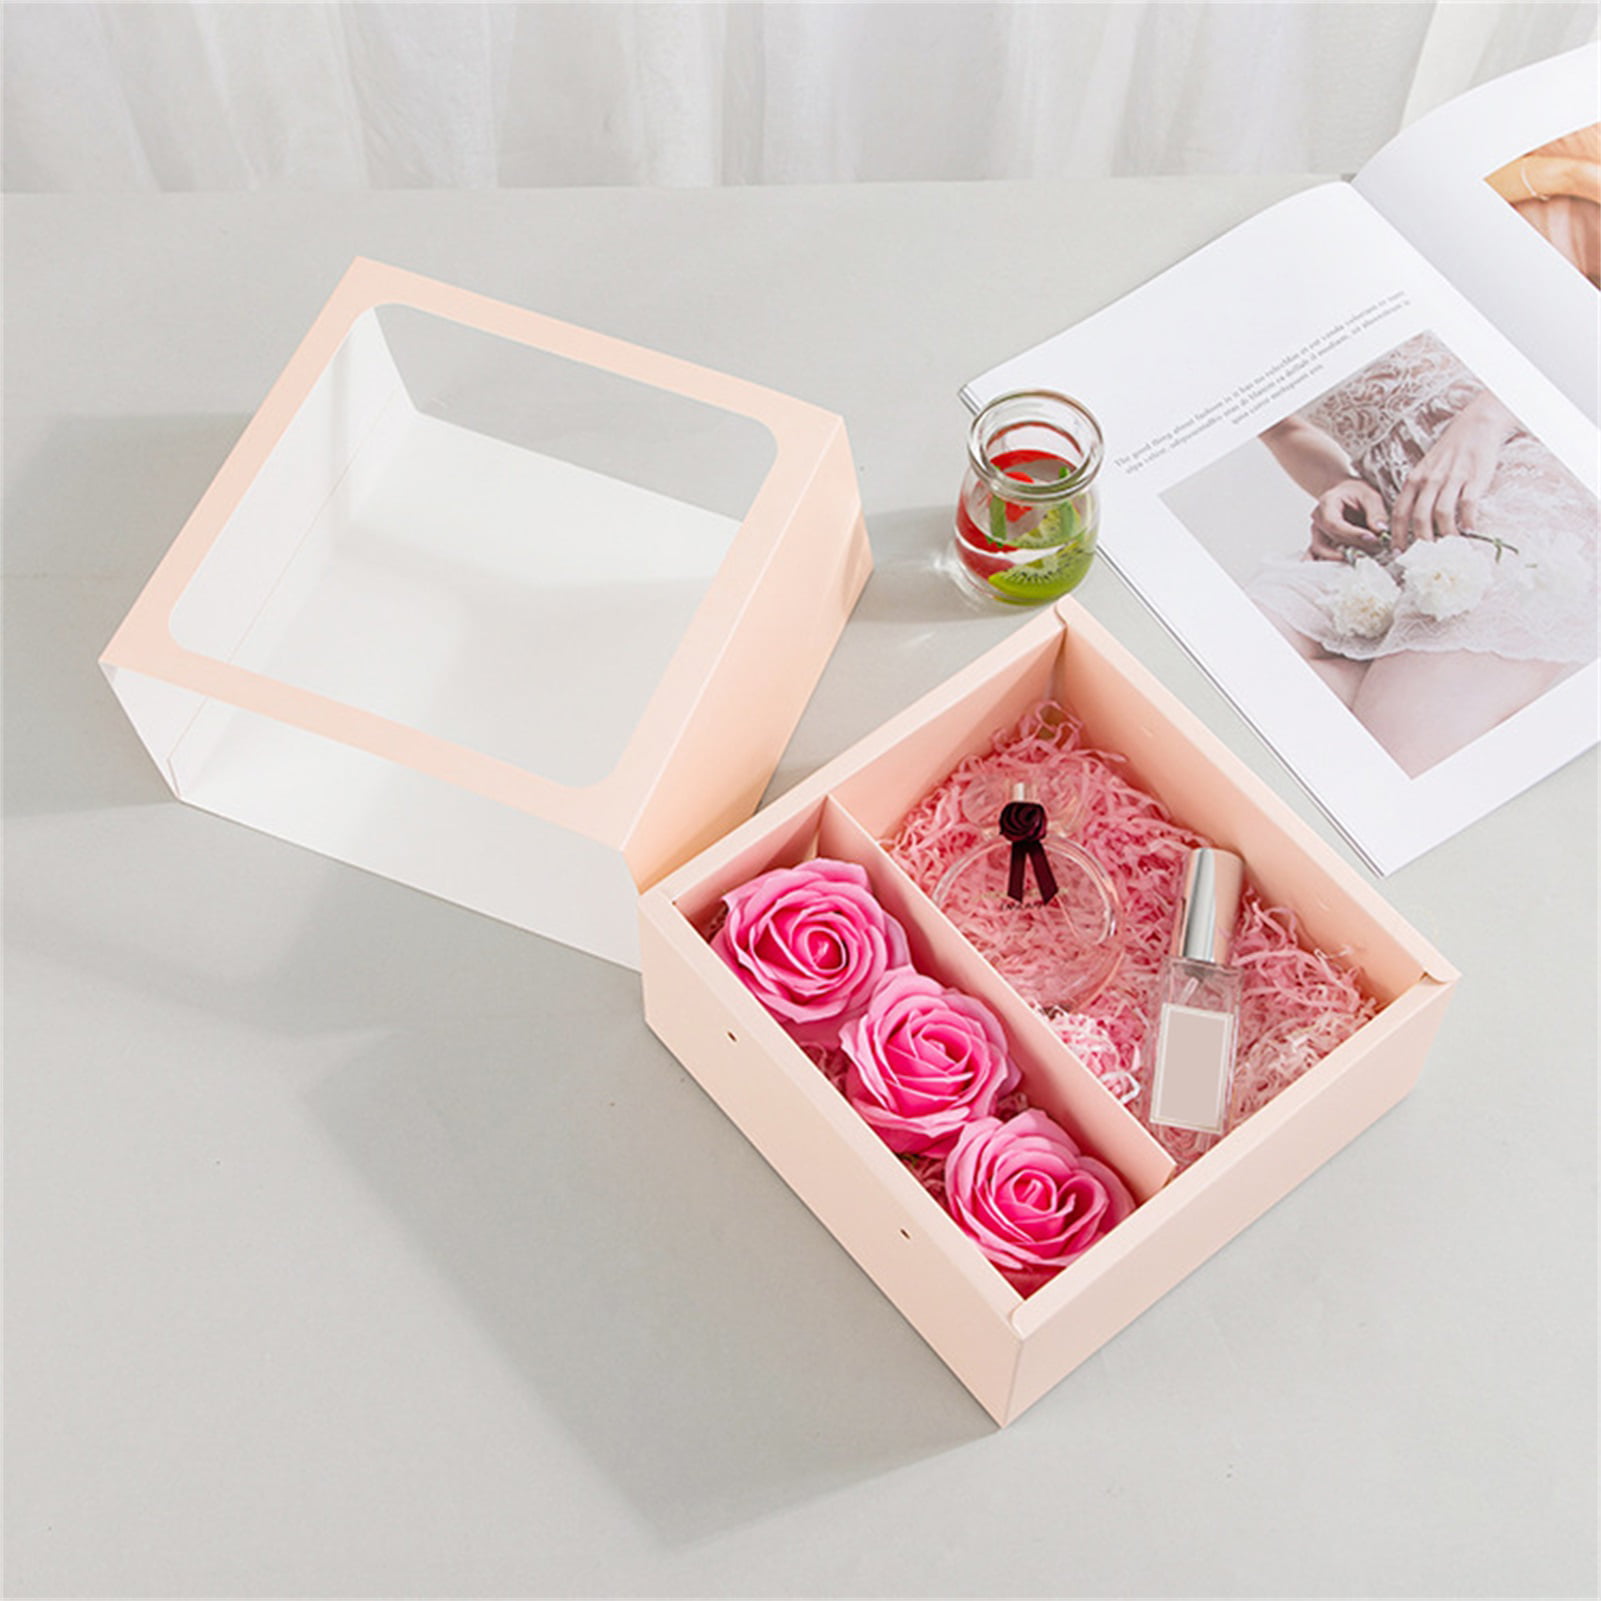 Peel n’ Pare Pack in Gift Box